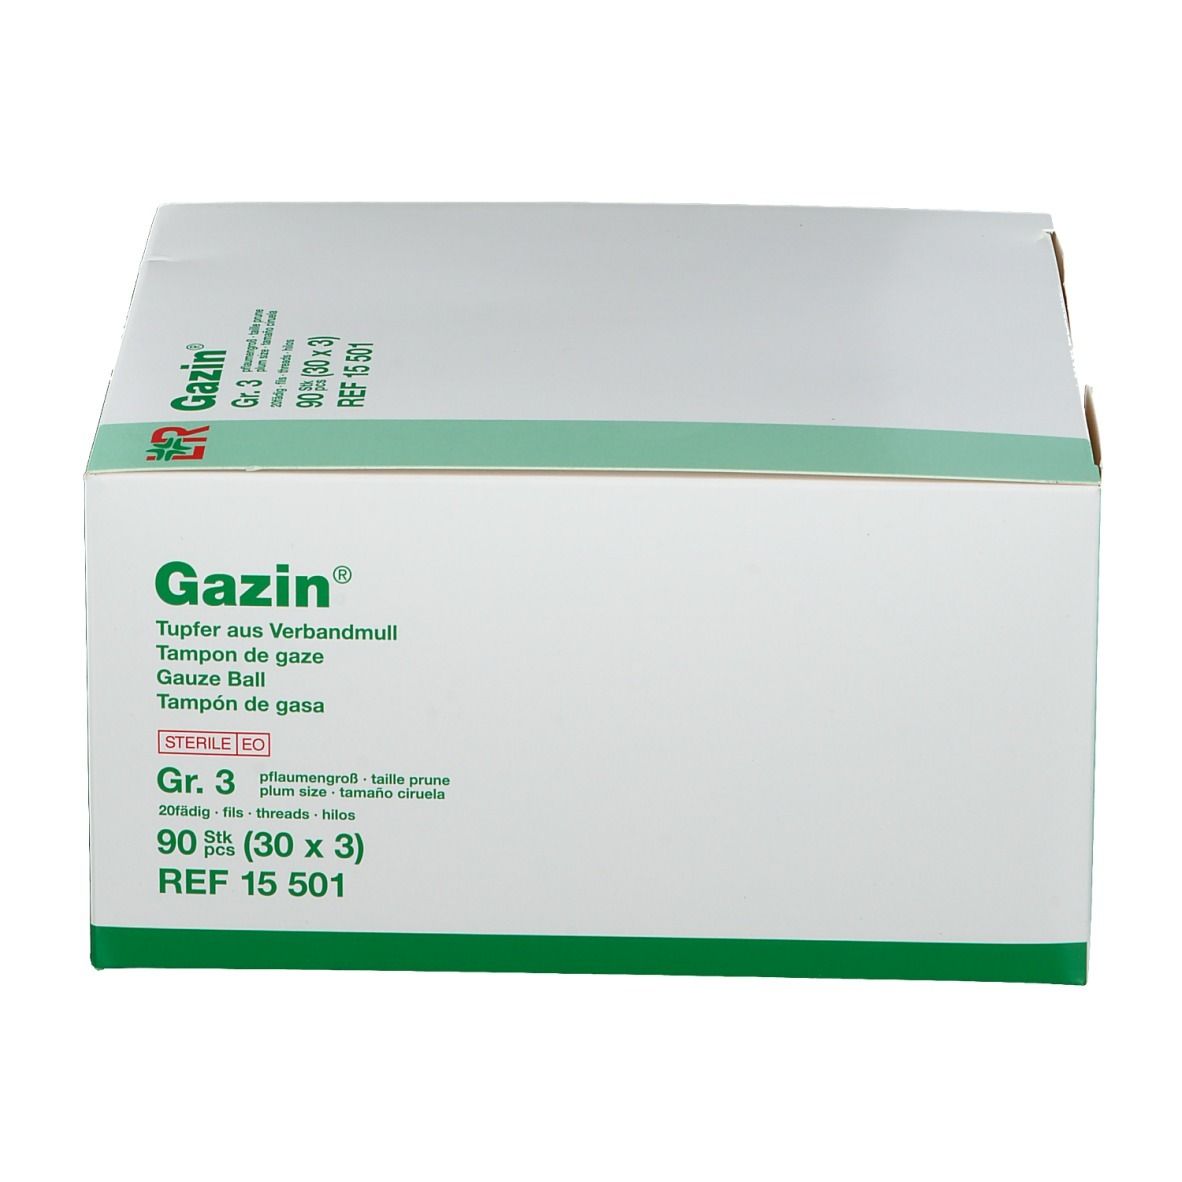 Gazin® Tupfer pflaumengroß steril Gr. 3